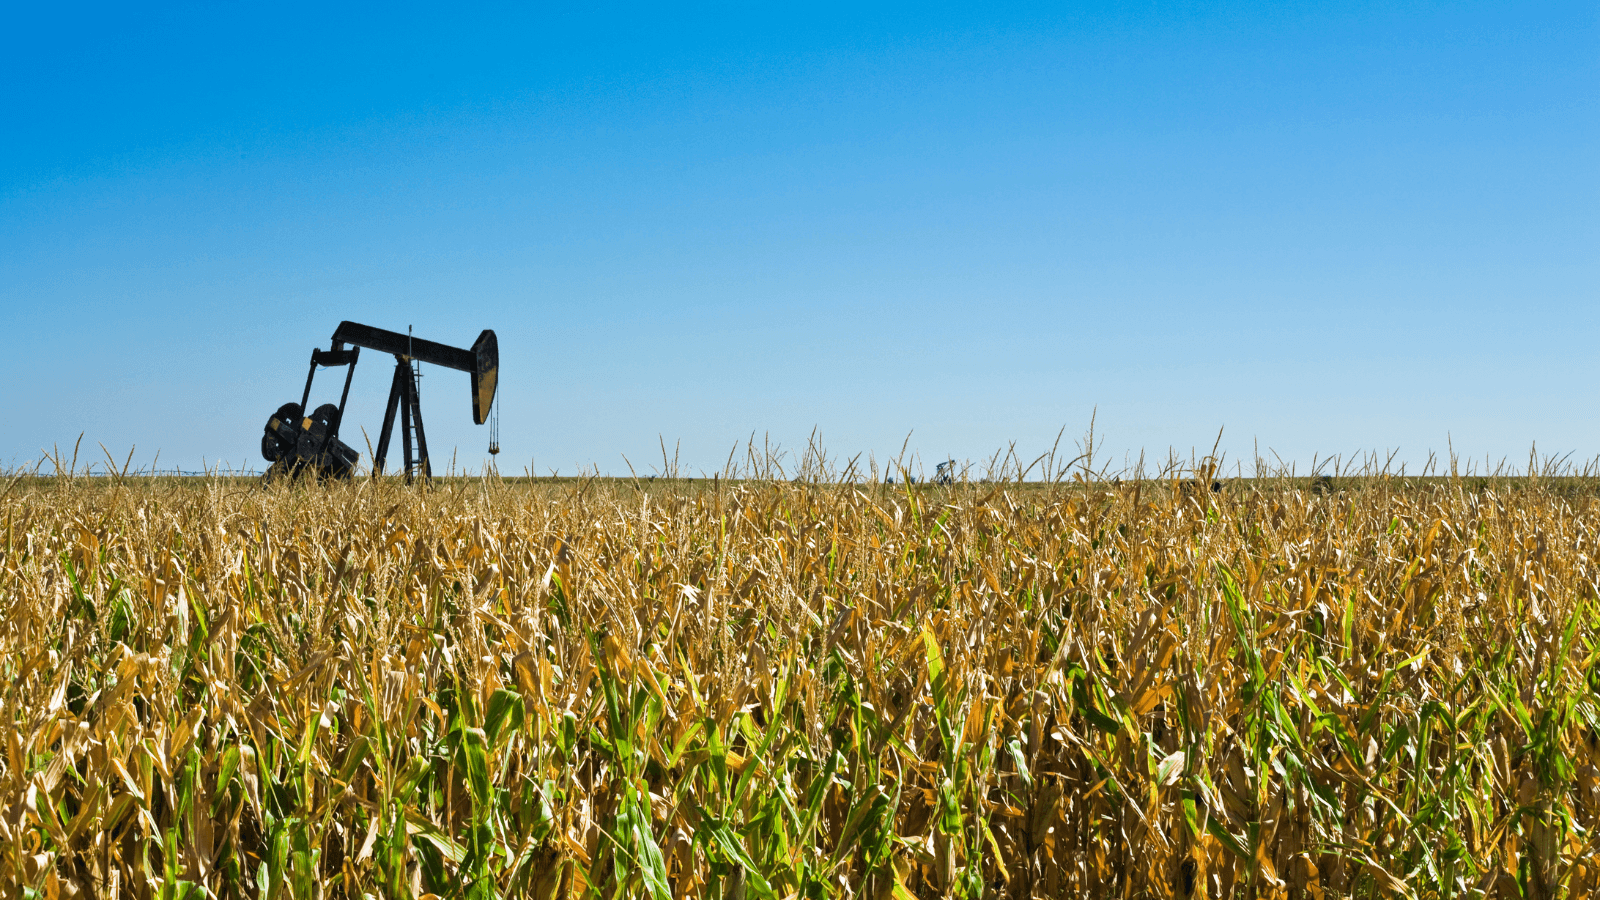 Oil well in corn field